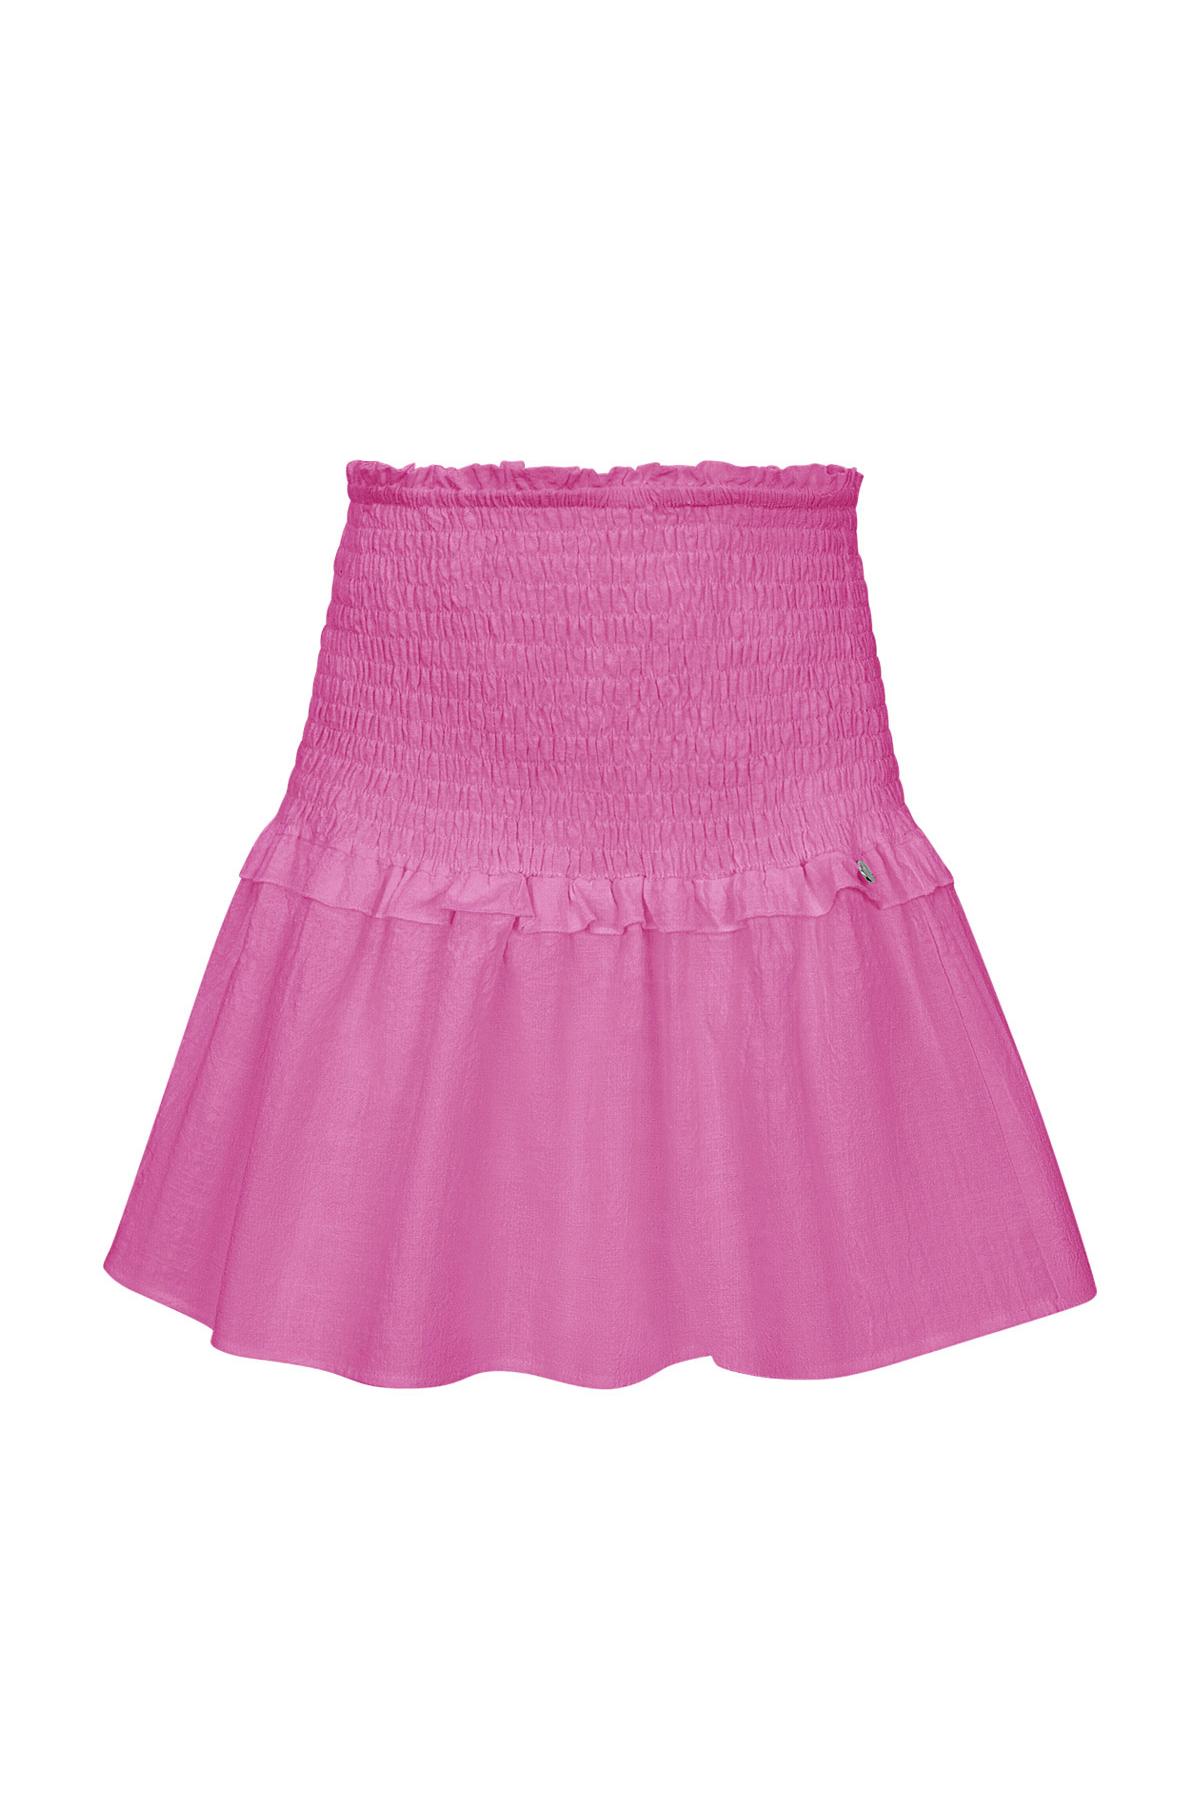 Skirt smock detail - pink M 